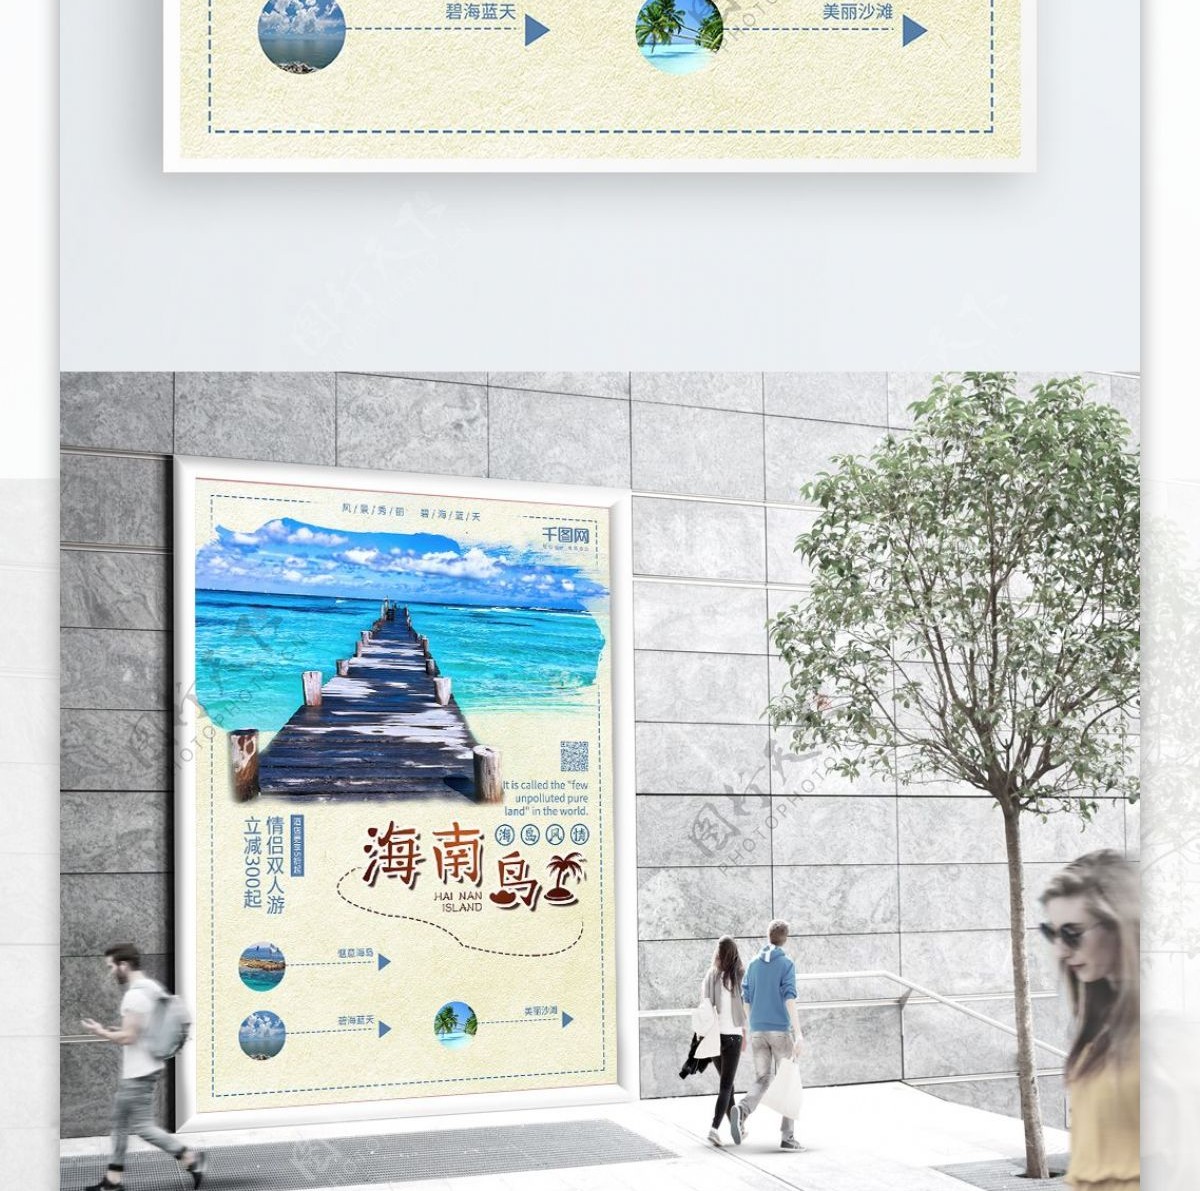 海边海岛度假宣传旅游海报